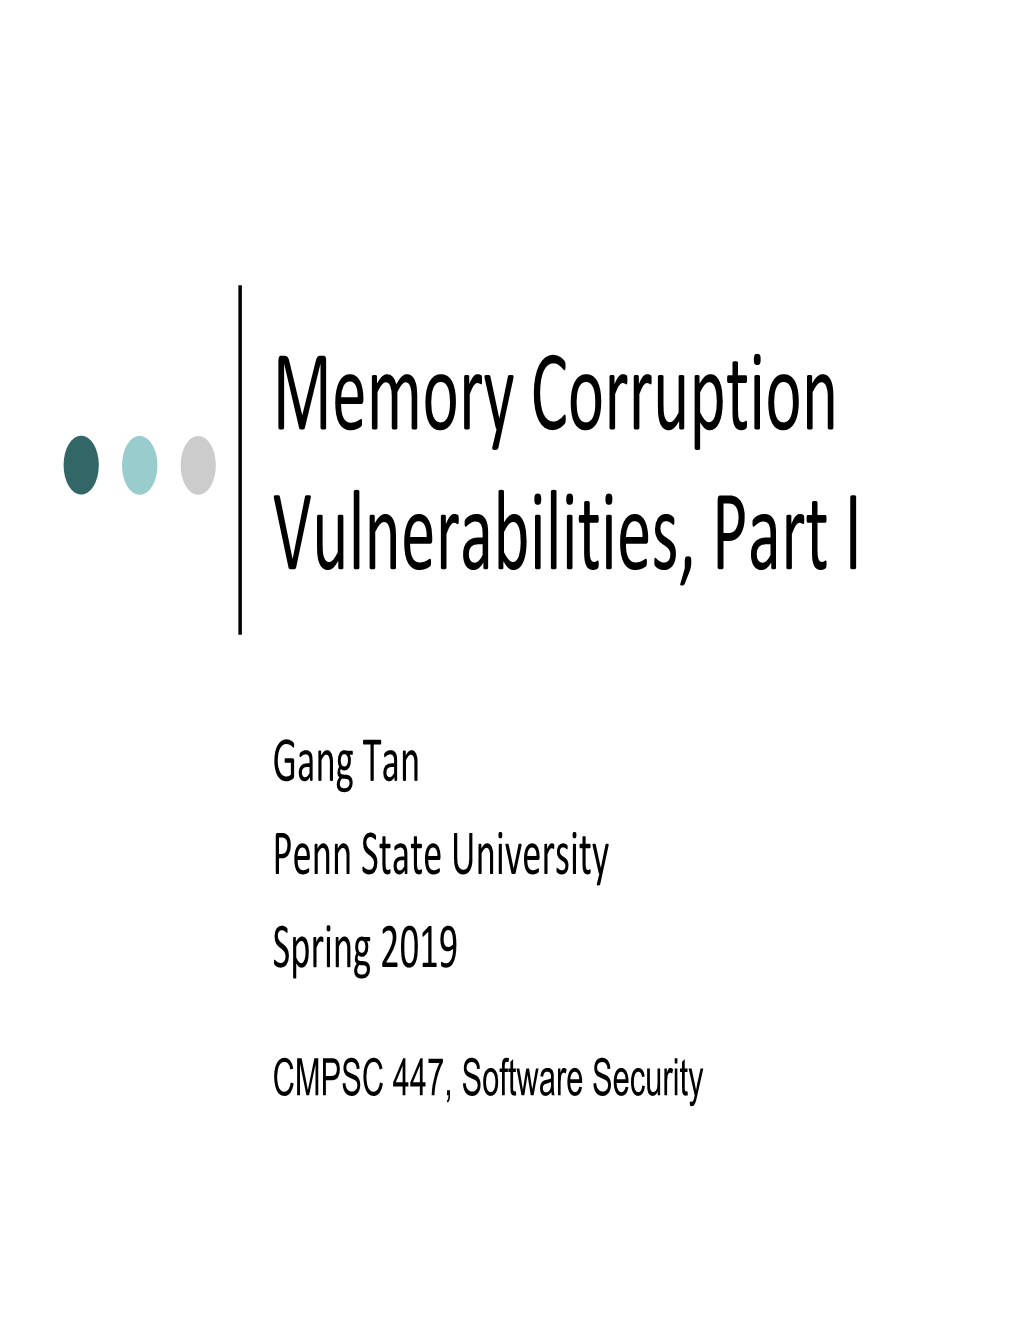 Memory Corruption Vulnerabilities, Part I